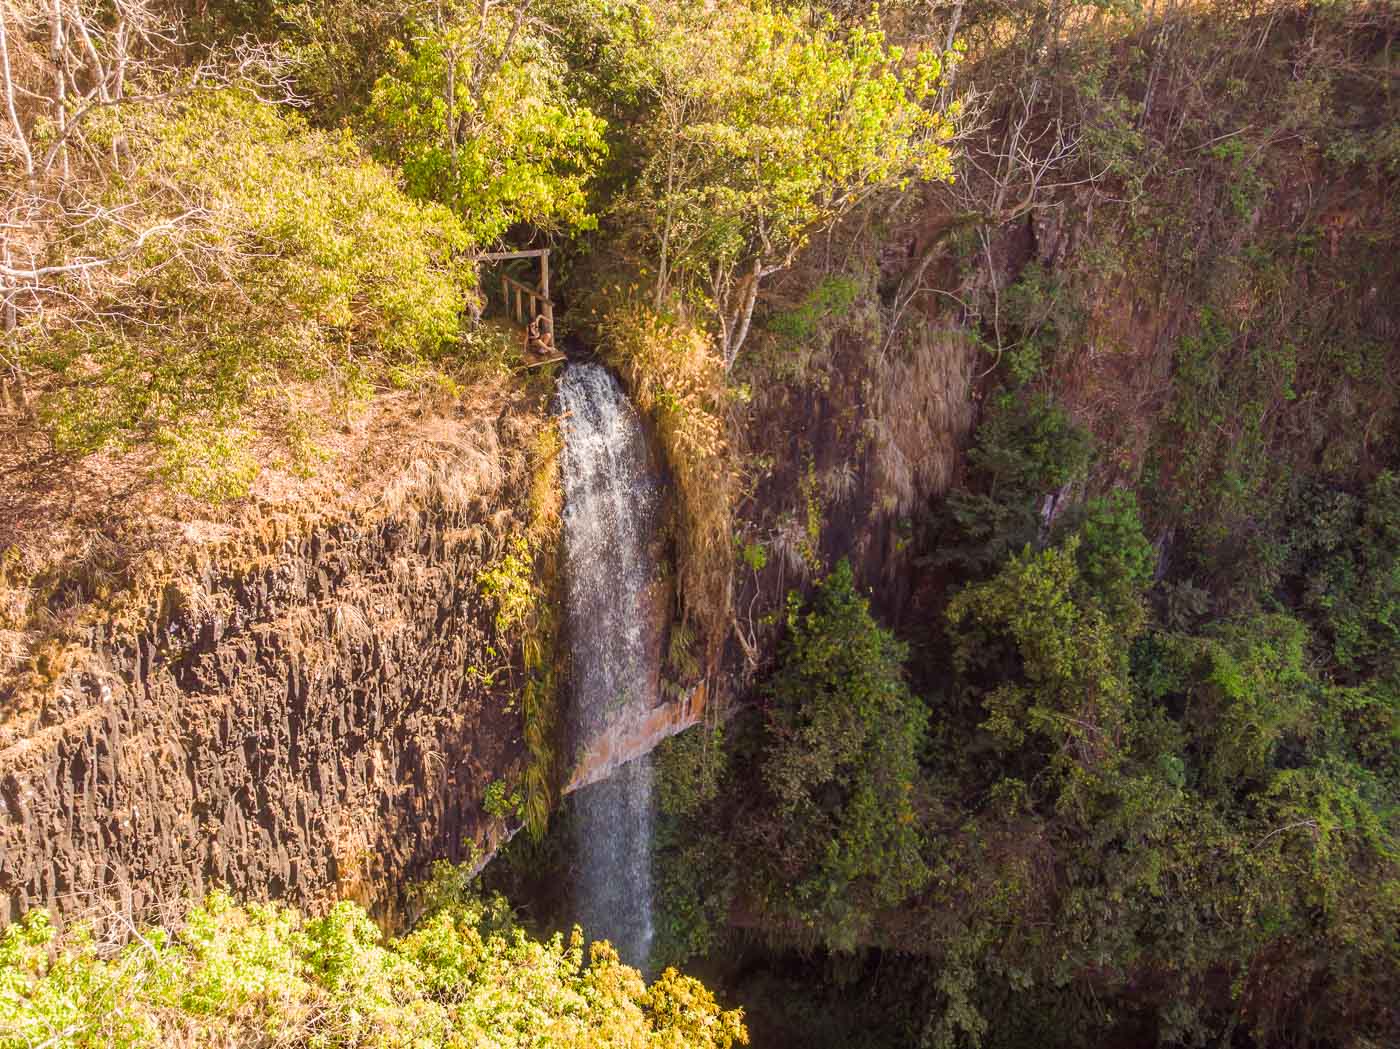 Saída da queda d'água da cachoeira dos macacos perto de Ribeirão Preto